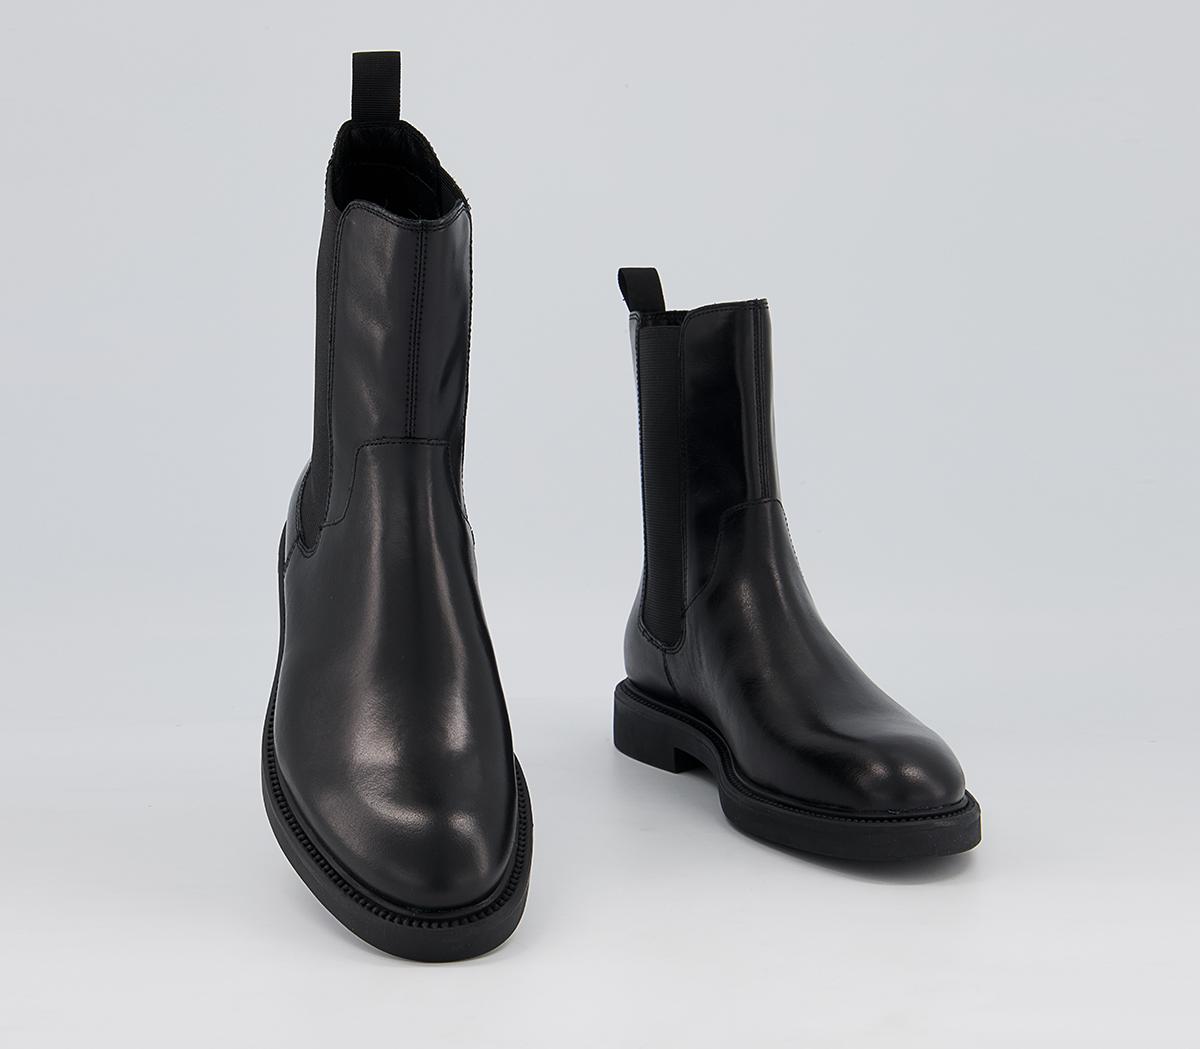 Vagabond Shoemakers Alex High Chelsea Boots Black - Women's Ankle Boots